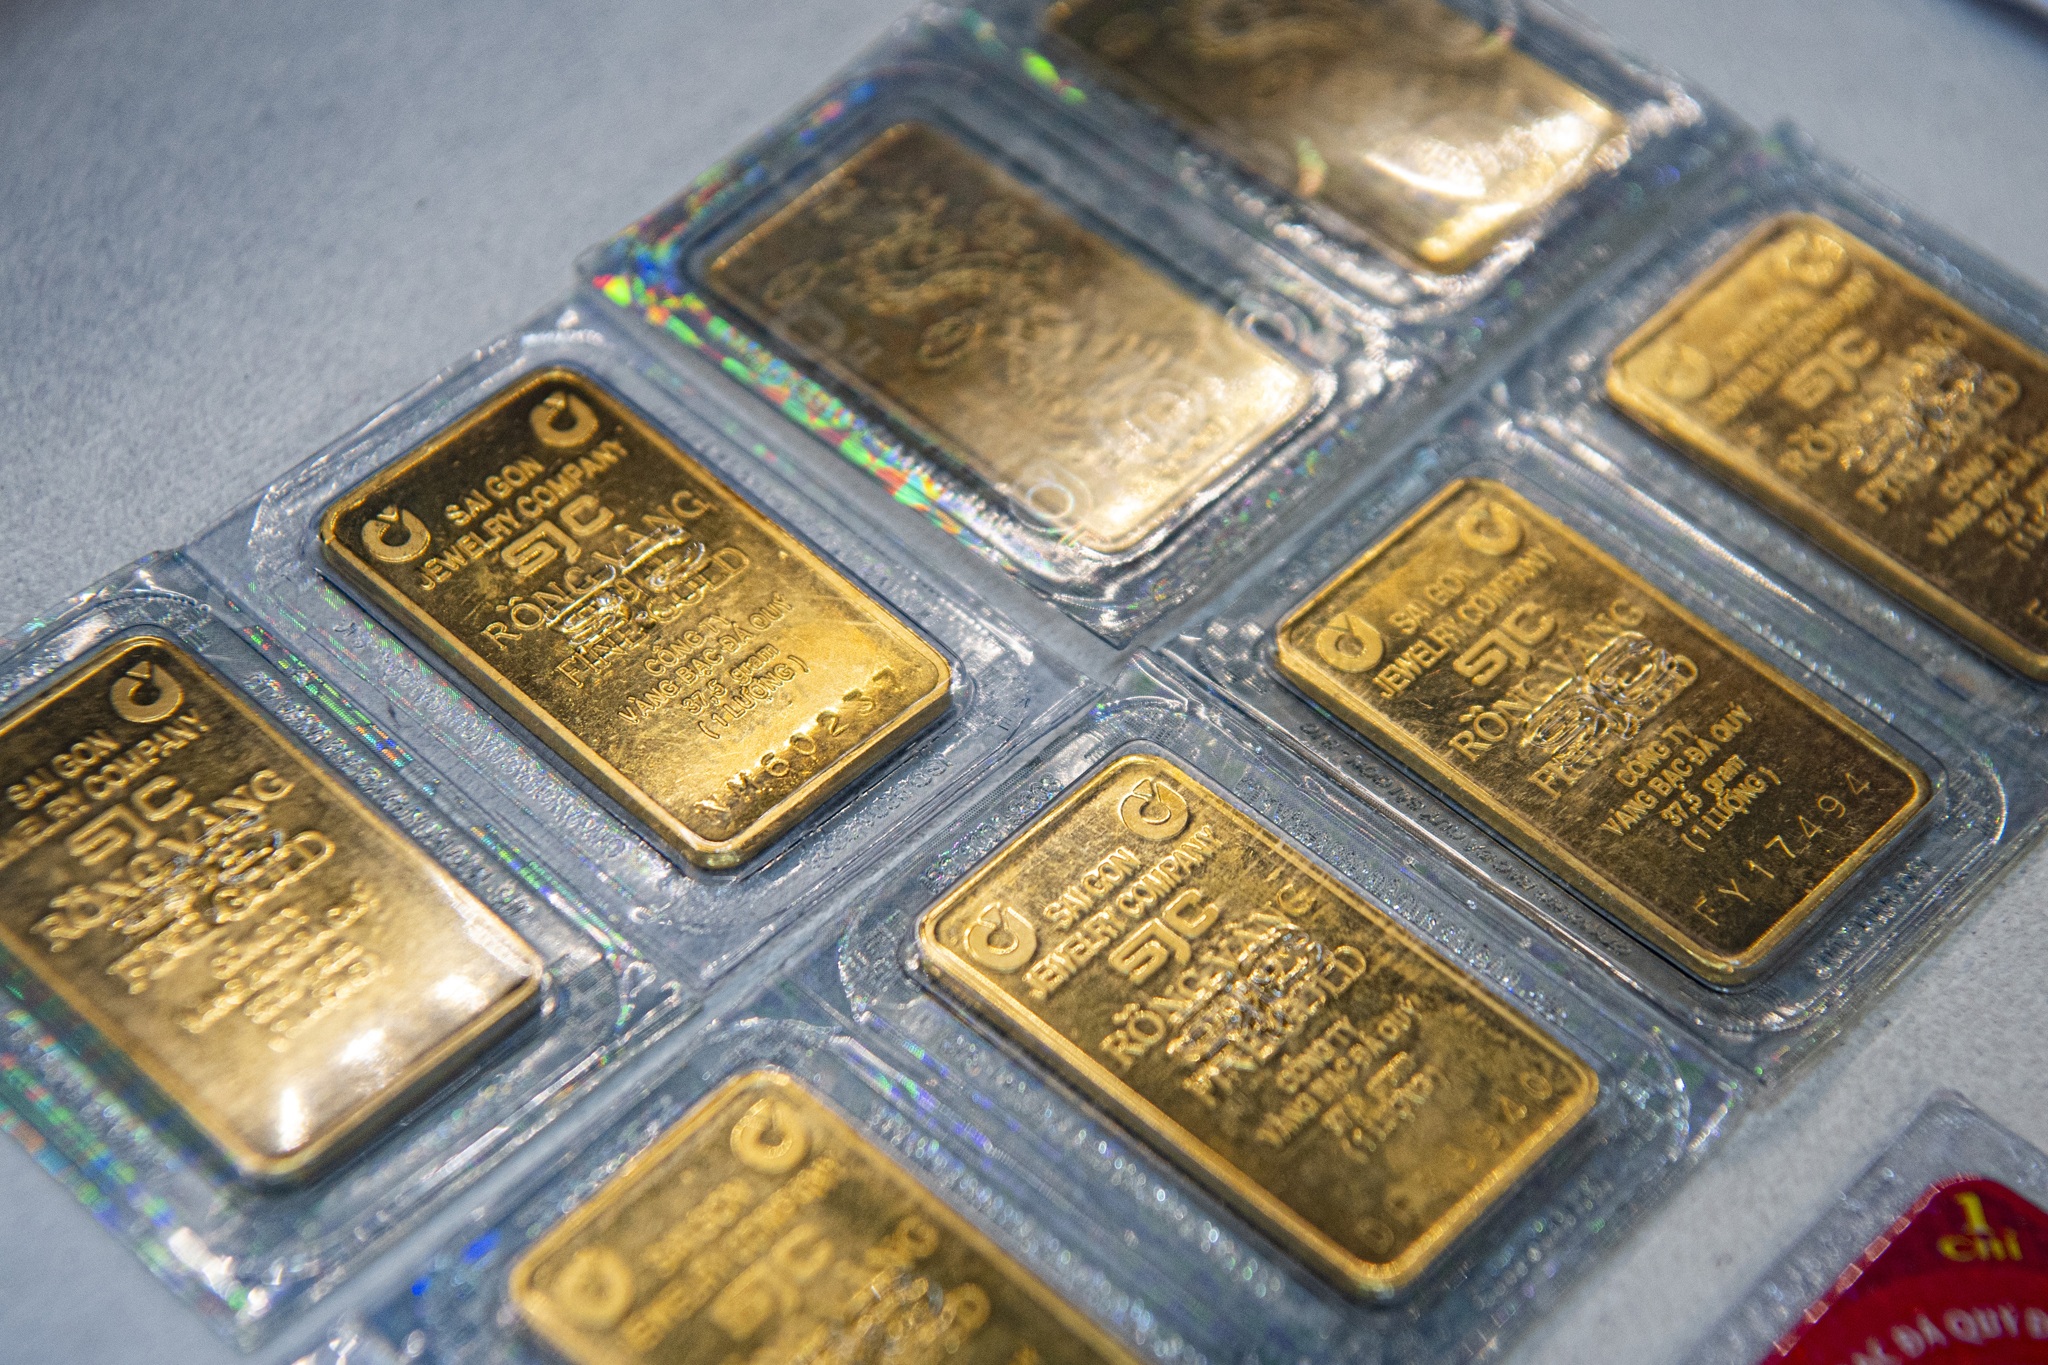 Giá vàng không ngừng tăng: Kỷ lục mới 87,5 triệu đồng/lượng